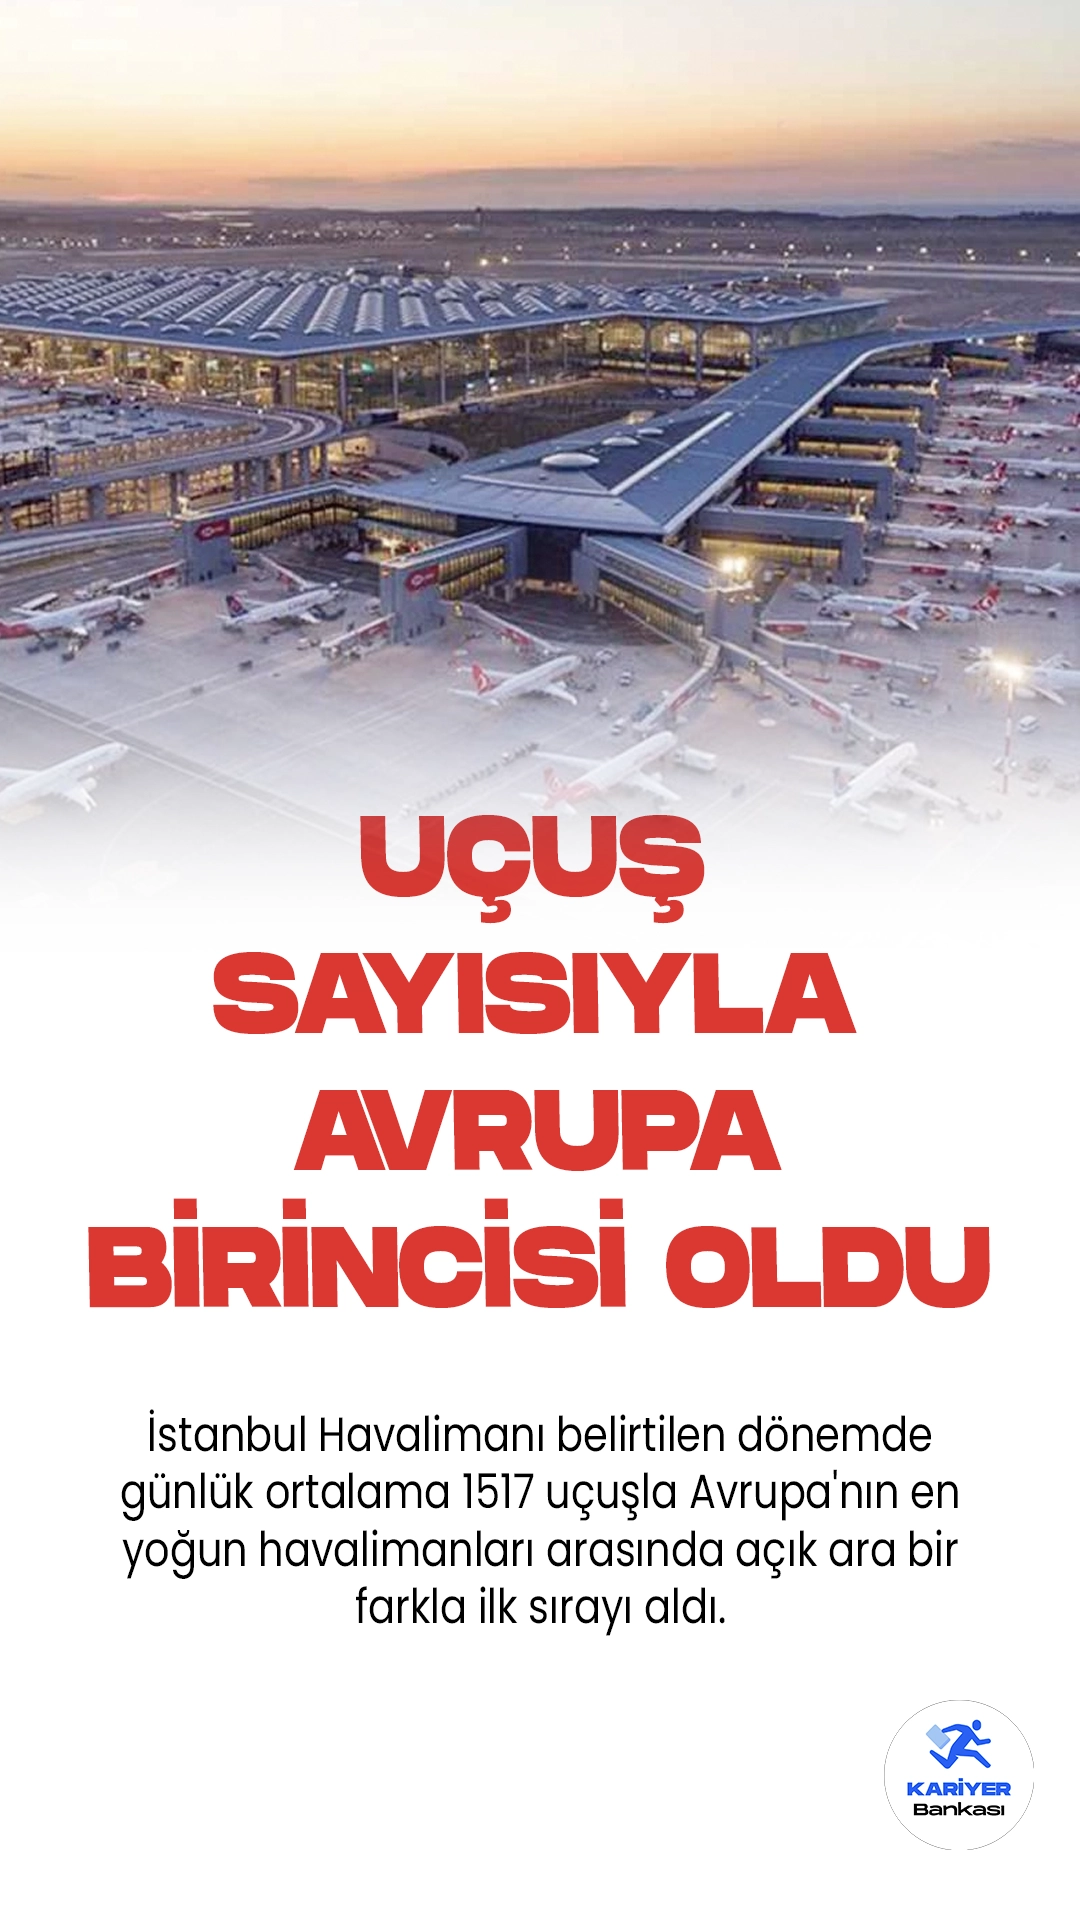 İstanbul Havalimanı Uçuş Sayısıyla Avrupa'nın Birincisi Oldu.Avrupa Hava Seyrüsefer Güvenliği Teşkilatı, 14-21 Ağustos tarihleri arasını kapsayan Avrupa Havacılık Raporu'nu yayımladı. Bu rapora göre, İstanbul Havalimanı bu belirtilen dönemde günlük ortalama 1517 uçuşla Avrupa'nın en yoğun havalimanları arasında açık ara bir farkla ilk sırayı aldı.